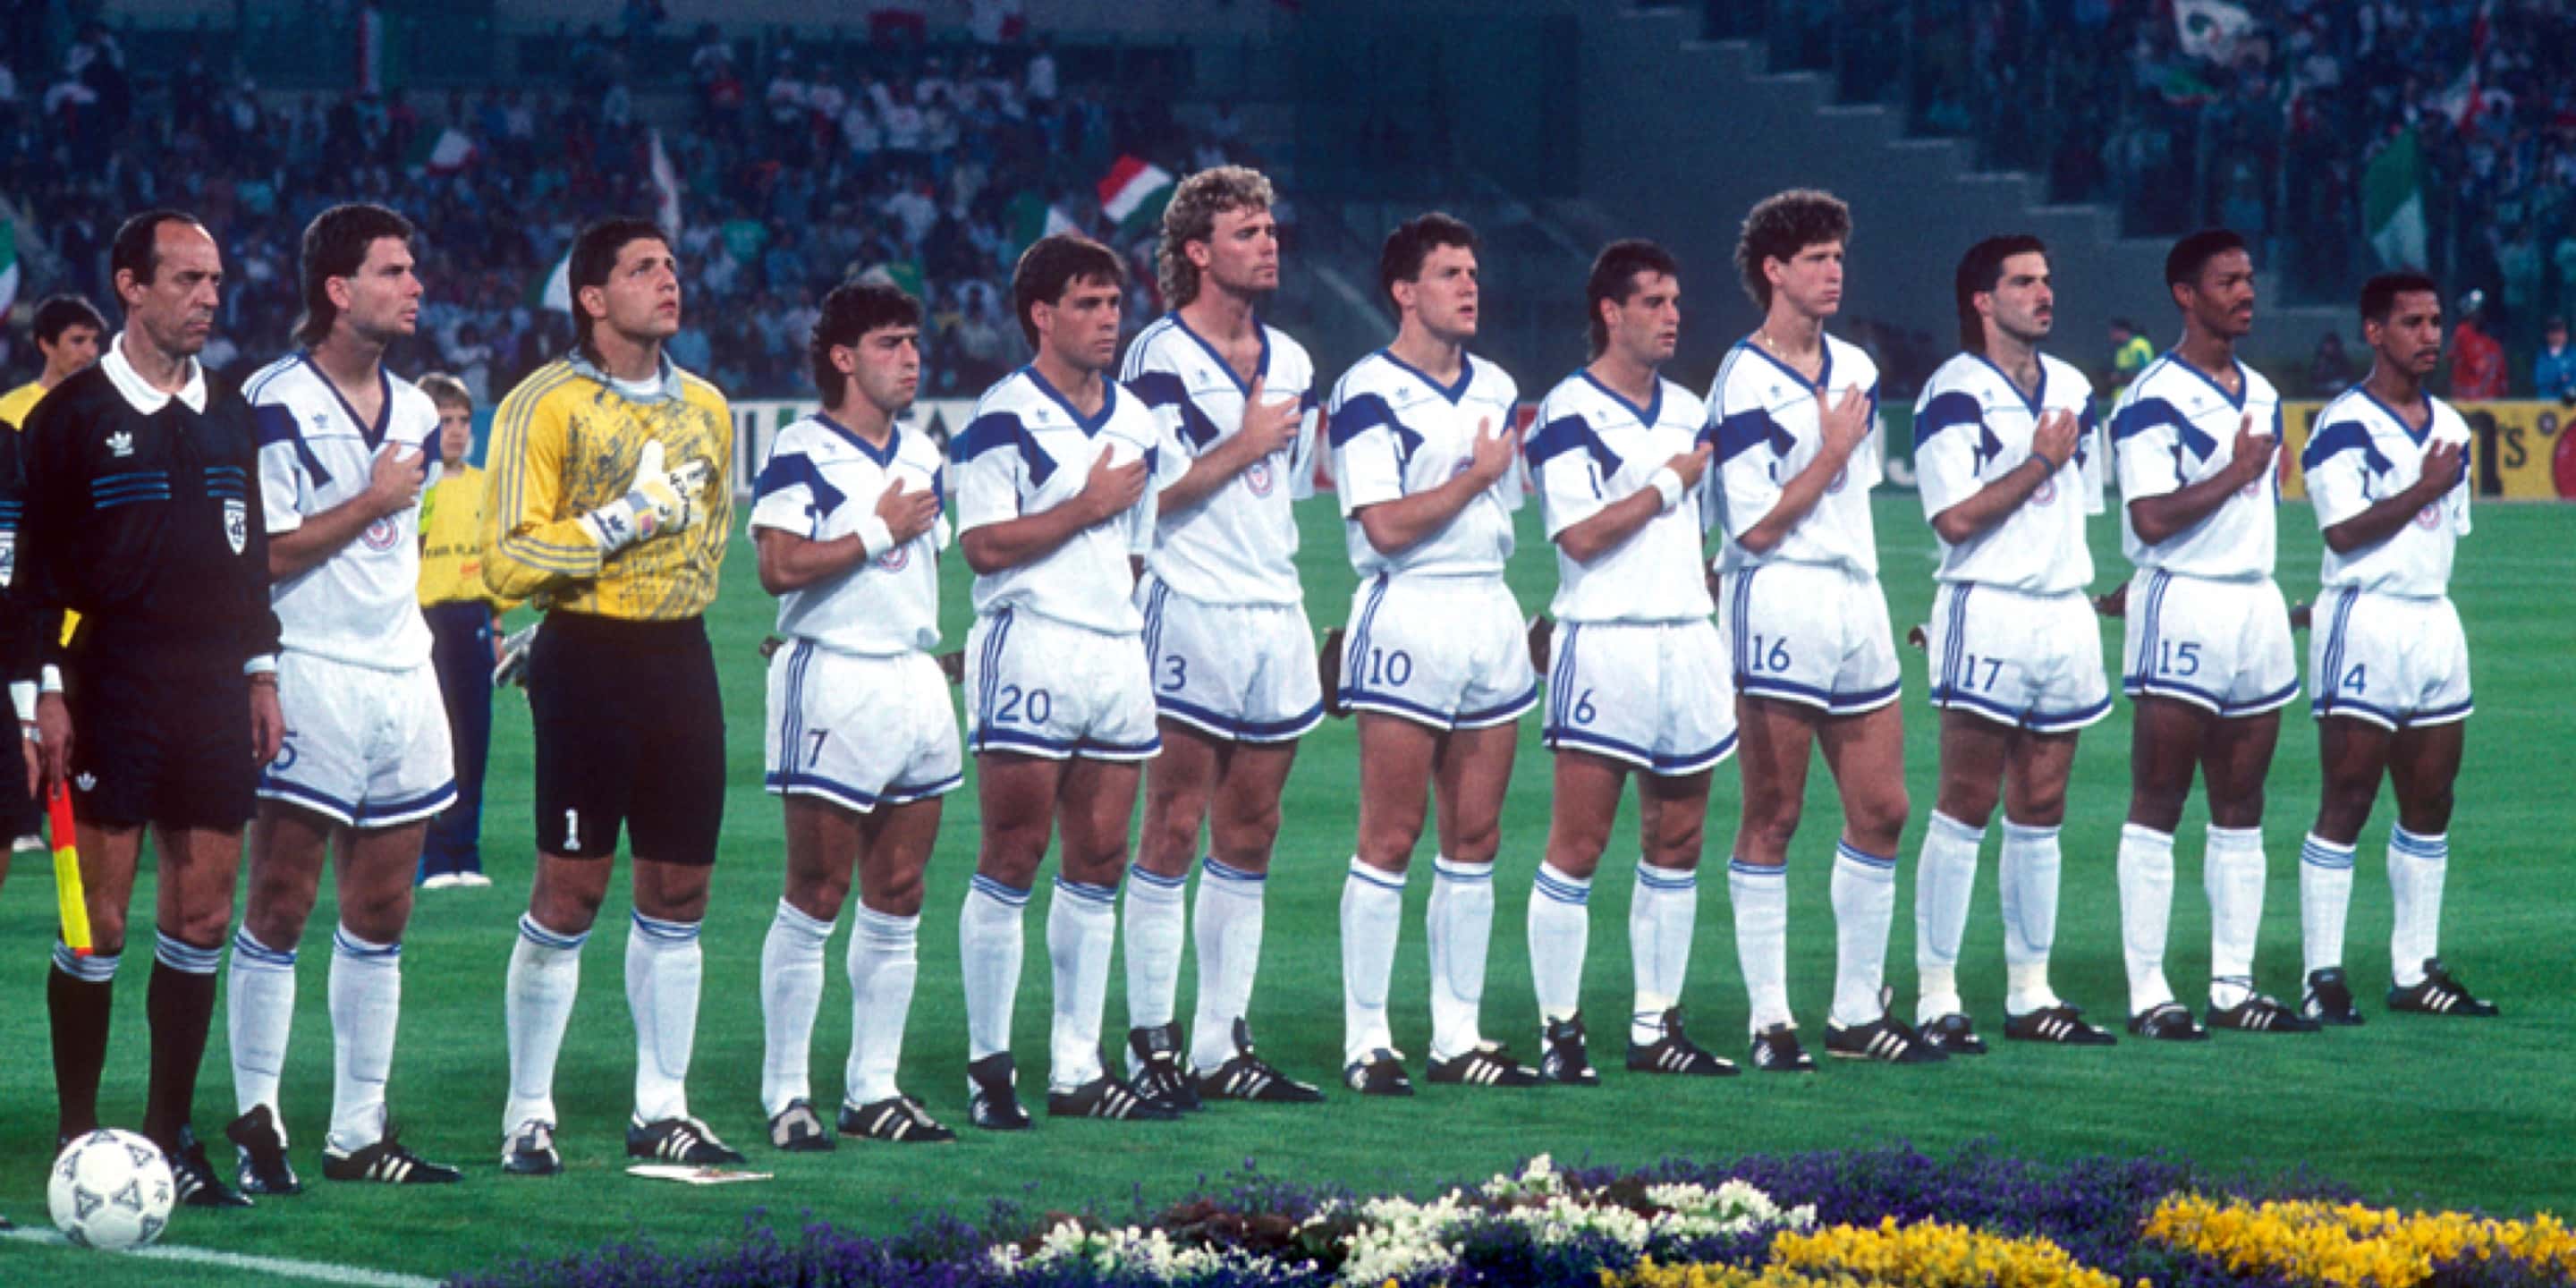 USA SOCCER USMNT 1994 WORLD CUP ORIGINAL JERSEY Size XL (VERY GOOD)